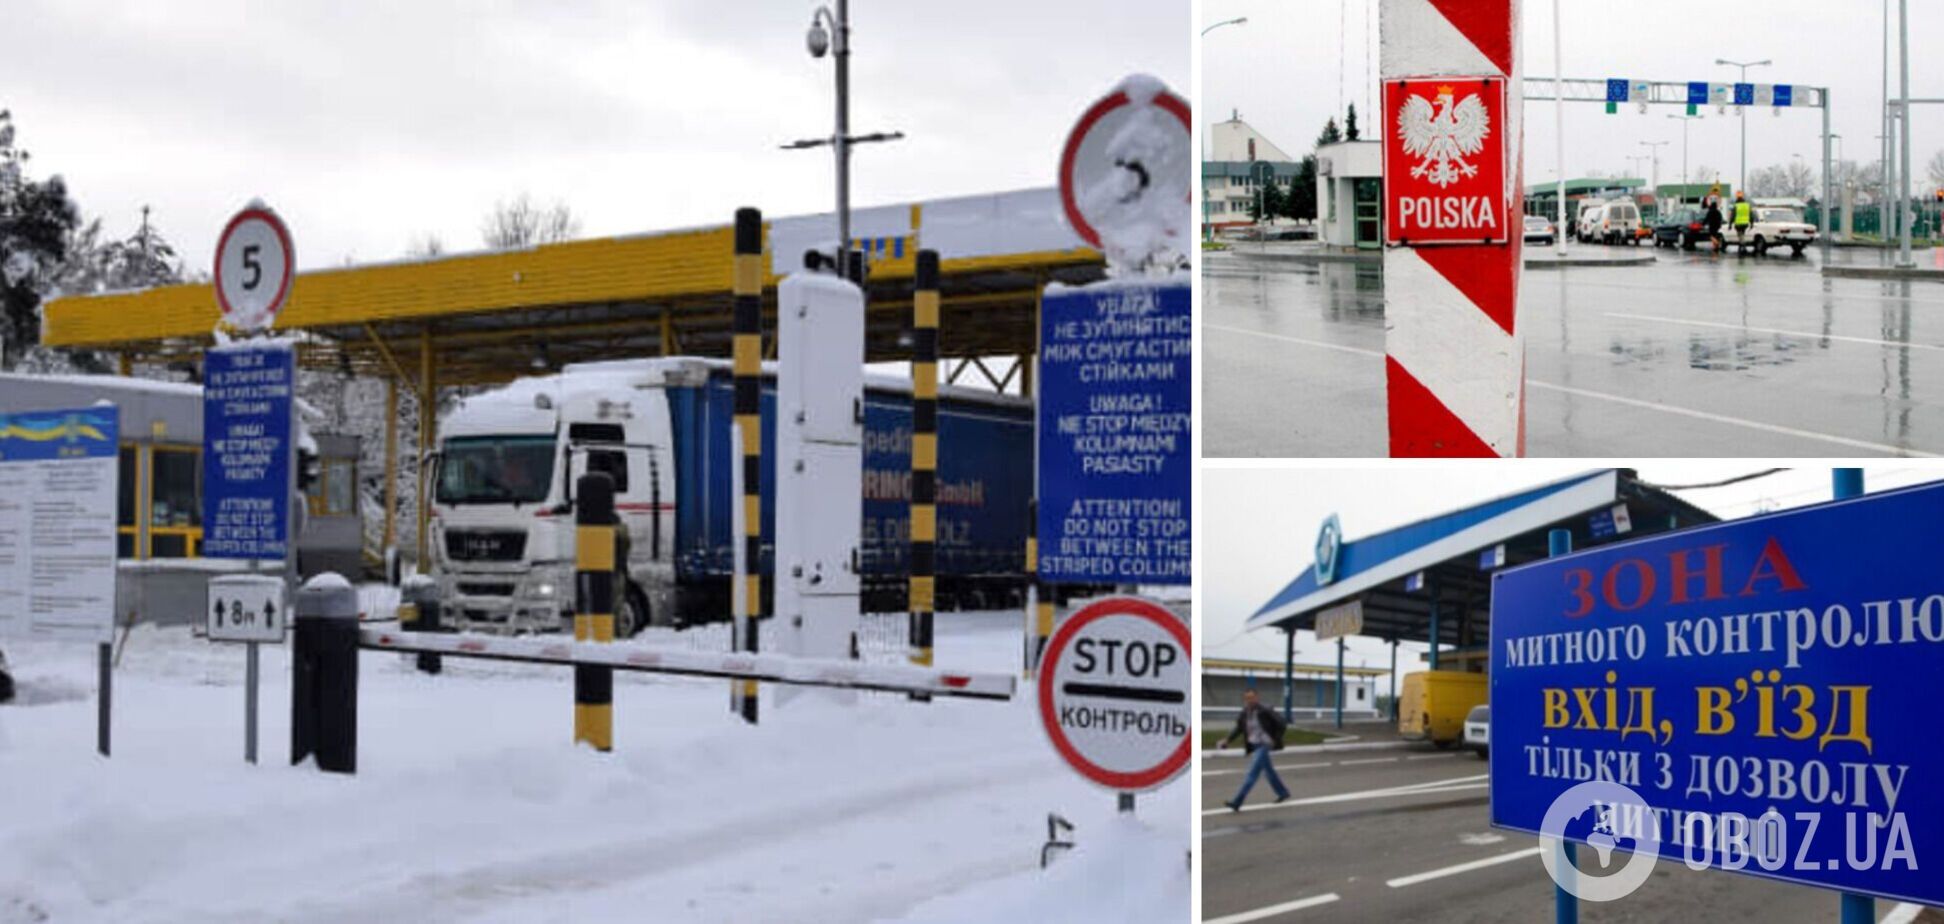 Польское правительство заявило о проверках на границе с Украиной